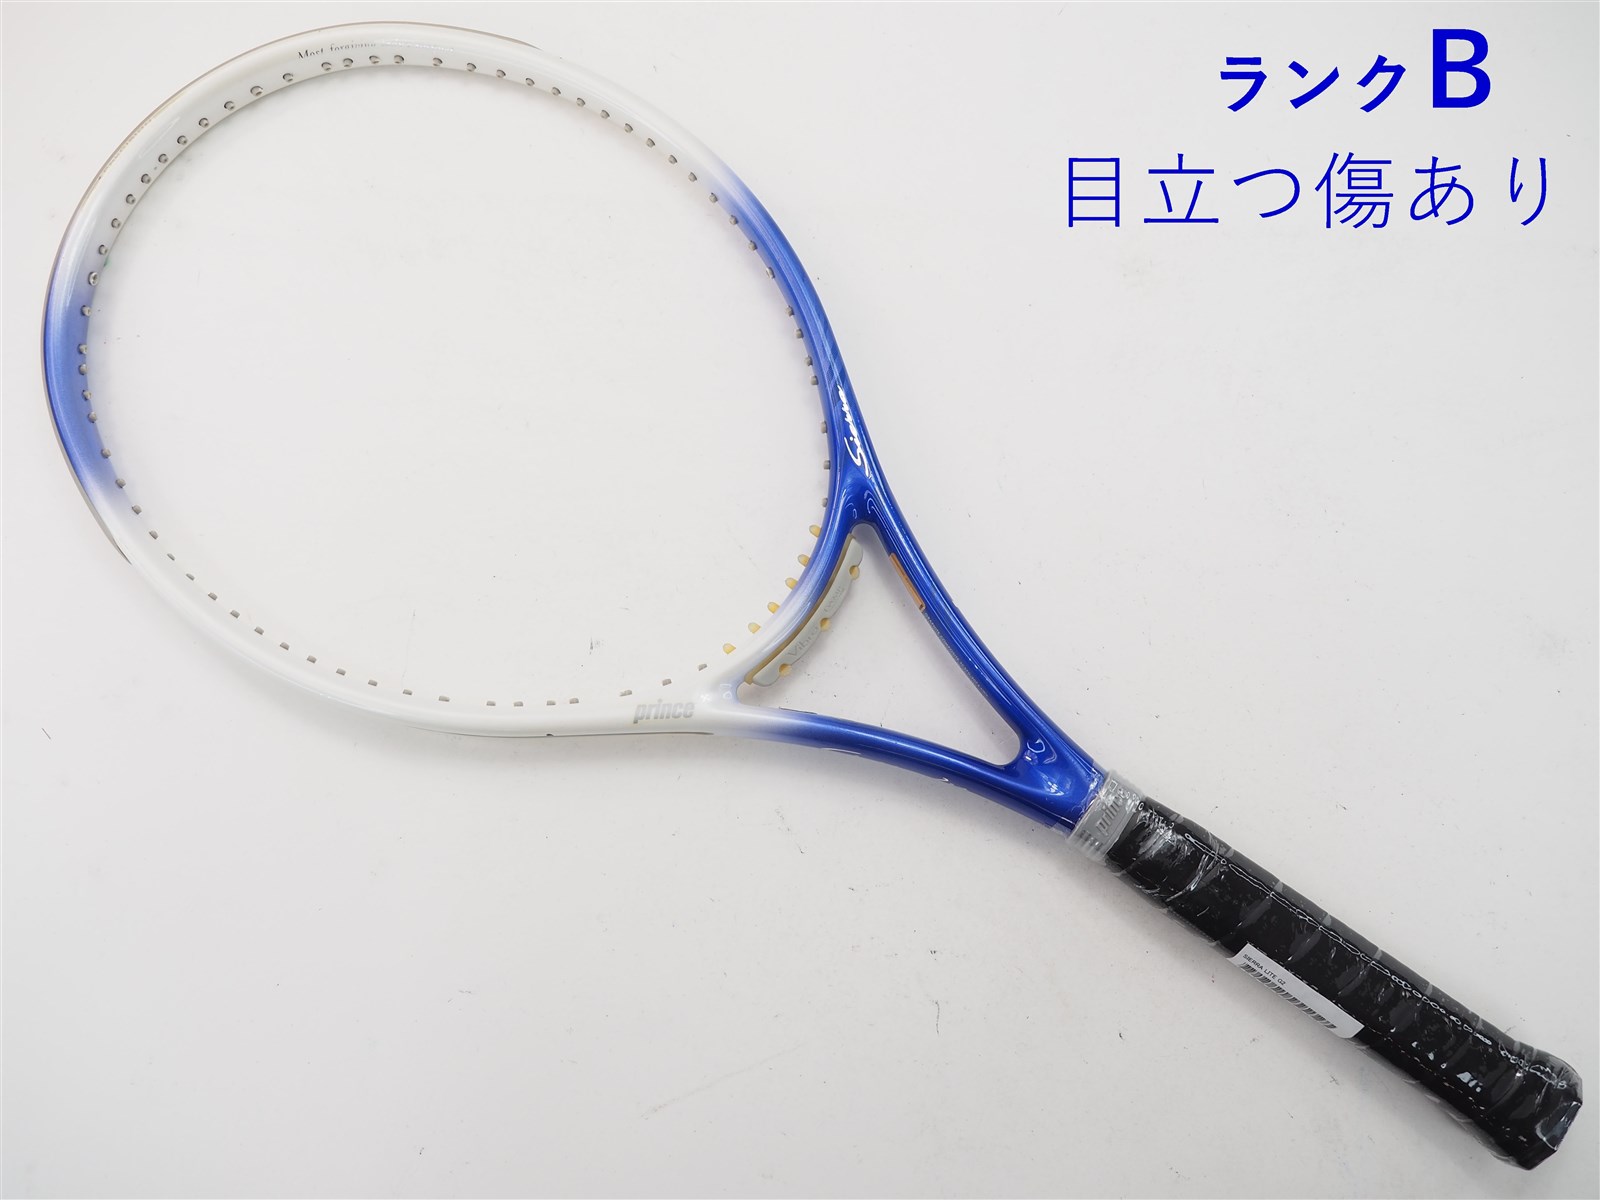 テニスラケット プリンス シエラ 100 2016年モデル (G2)PRINCE SIERRA 100 2016